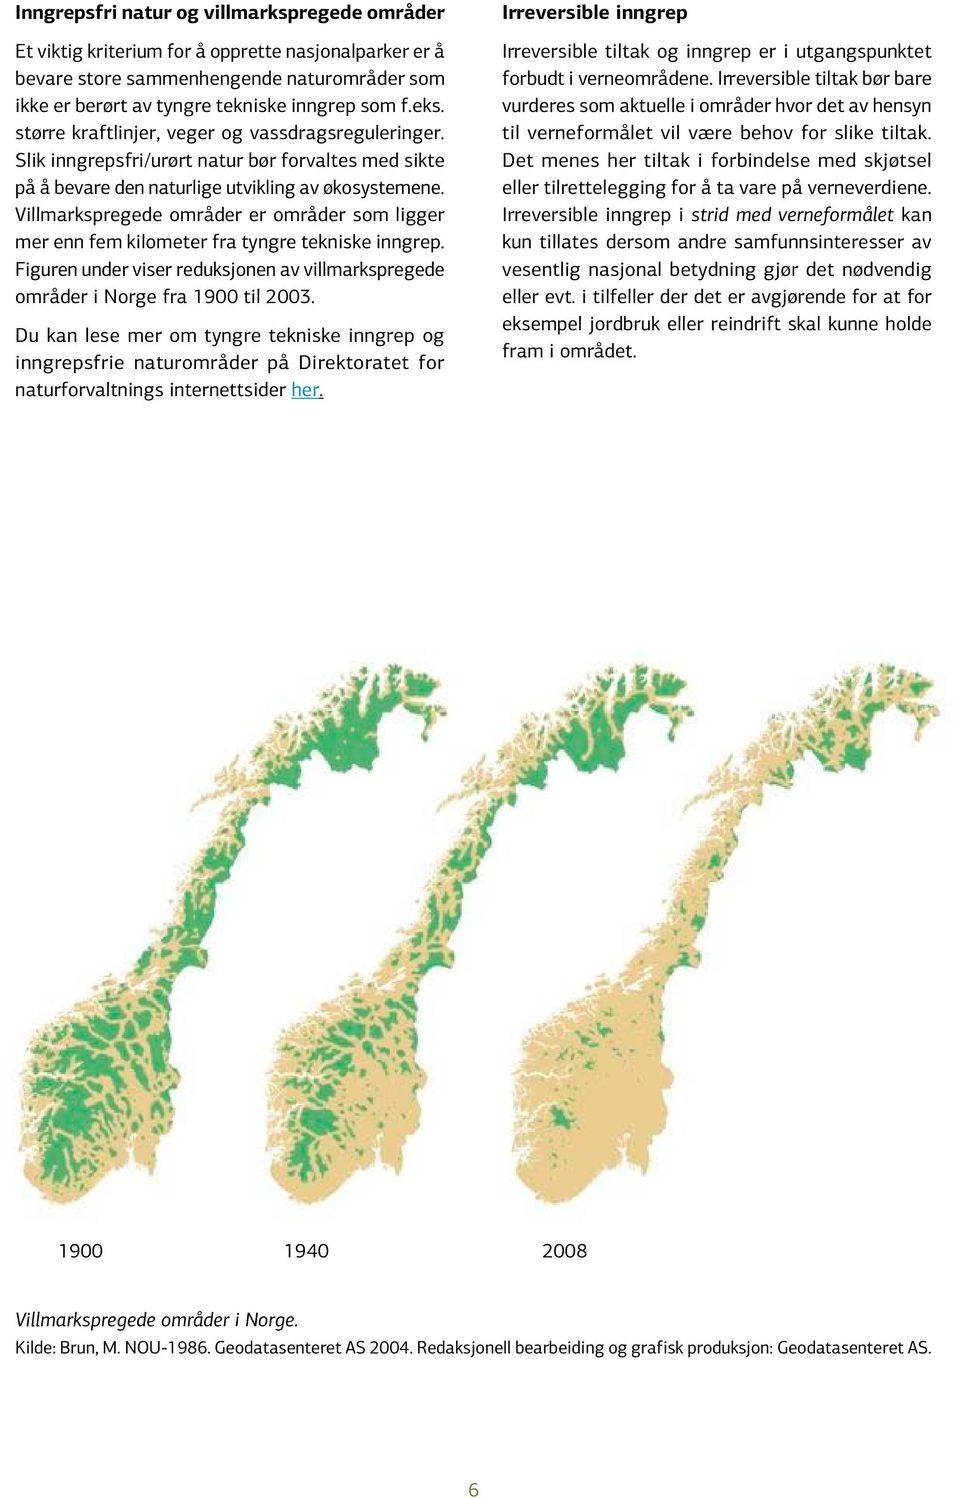 Villmarkspregede områder er områder som ligger mer enn fem kilometer fra tyngre tekniske inngrep. Figuren under viser reduksjonen av villmarkspregede områder i Norge fra 1900 til 2003.